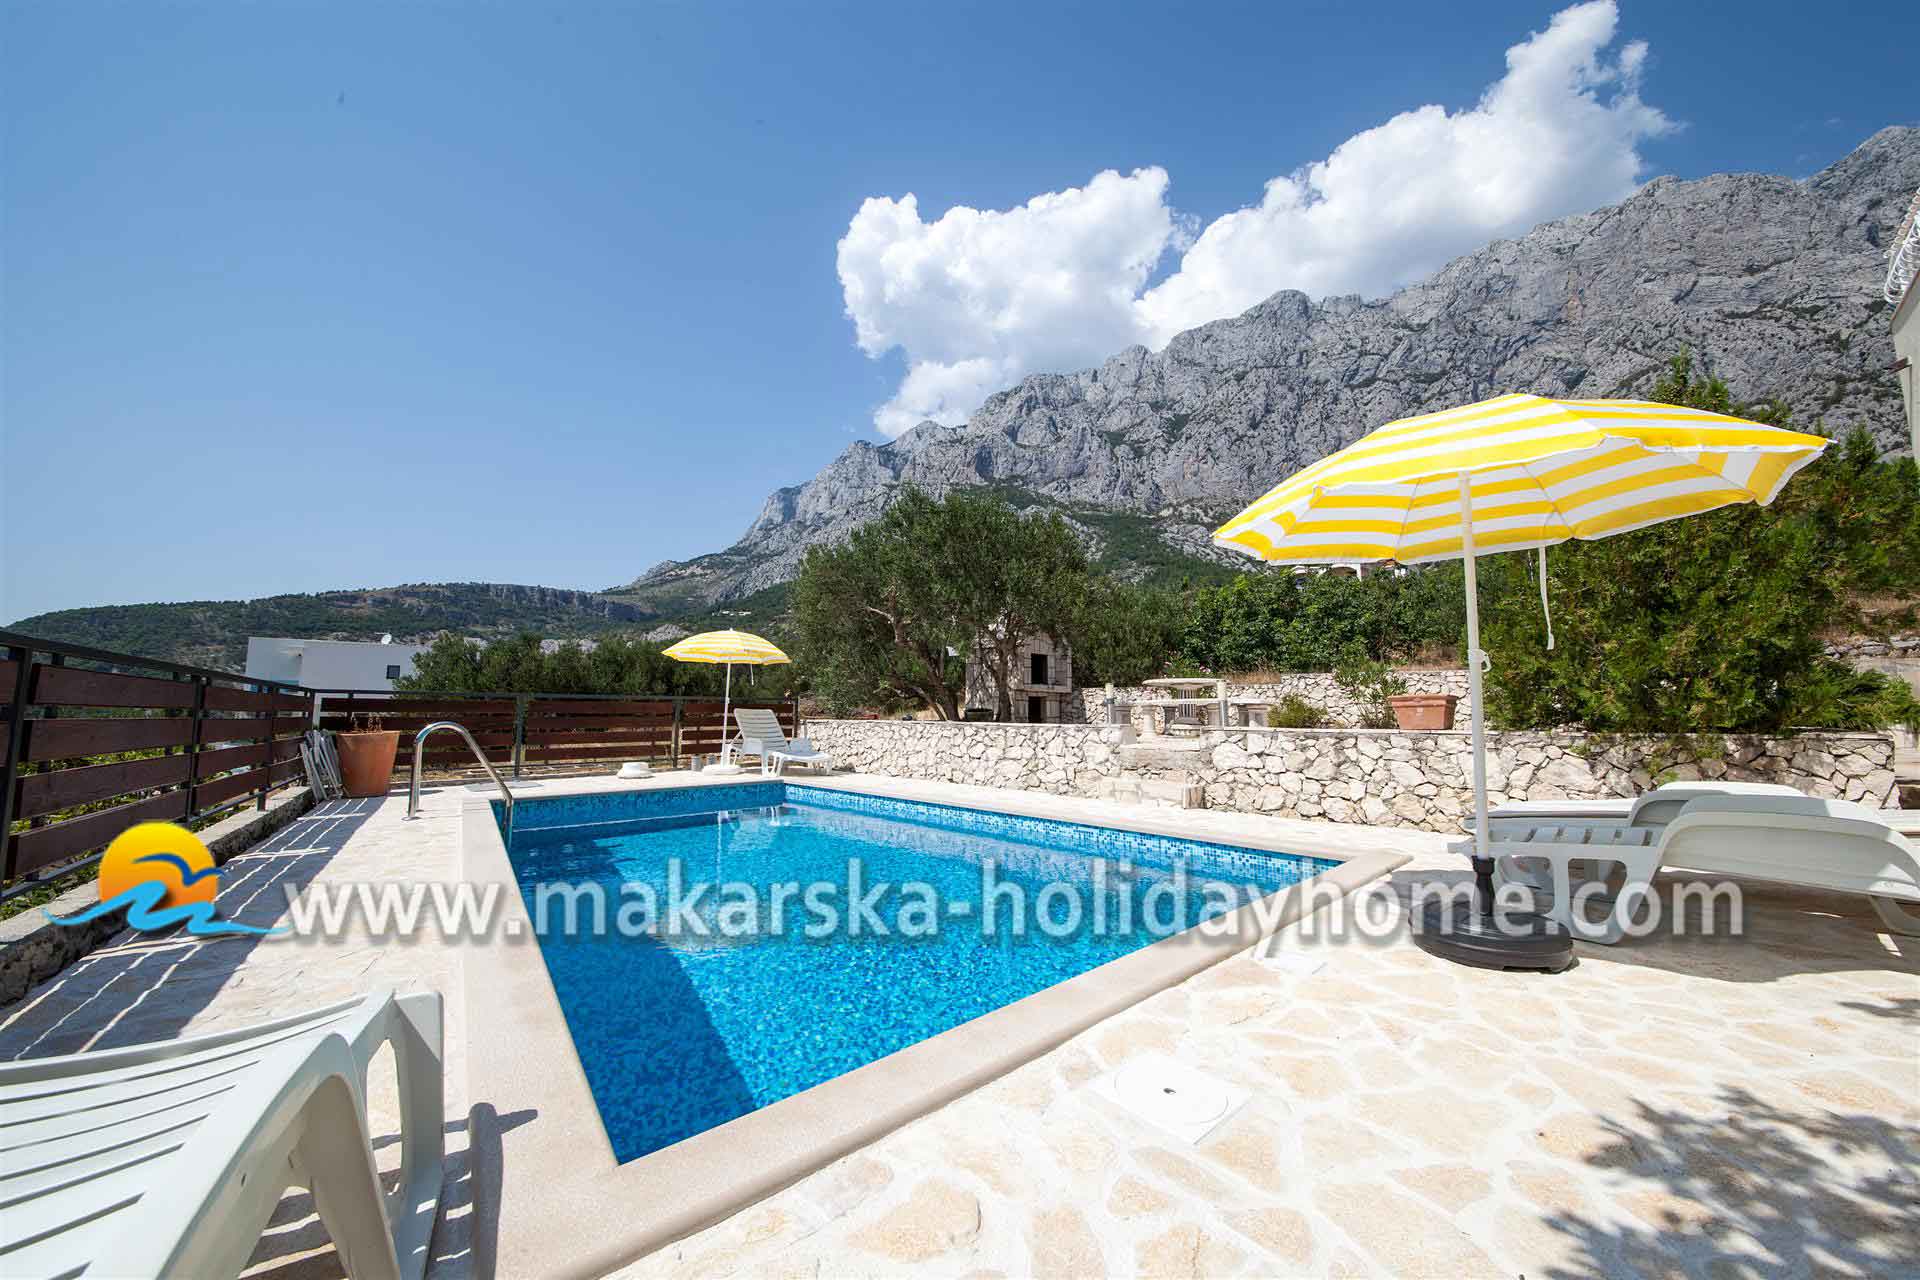 Holiday villa with Pool in Makarska - Willa Leon / 02